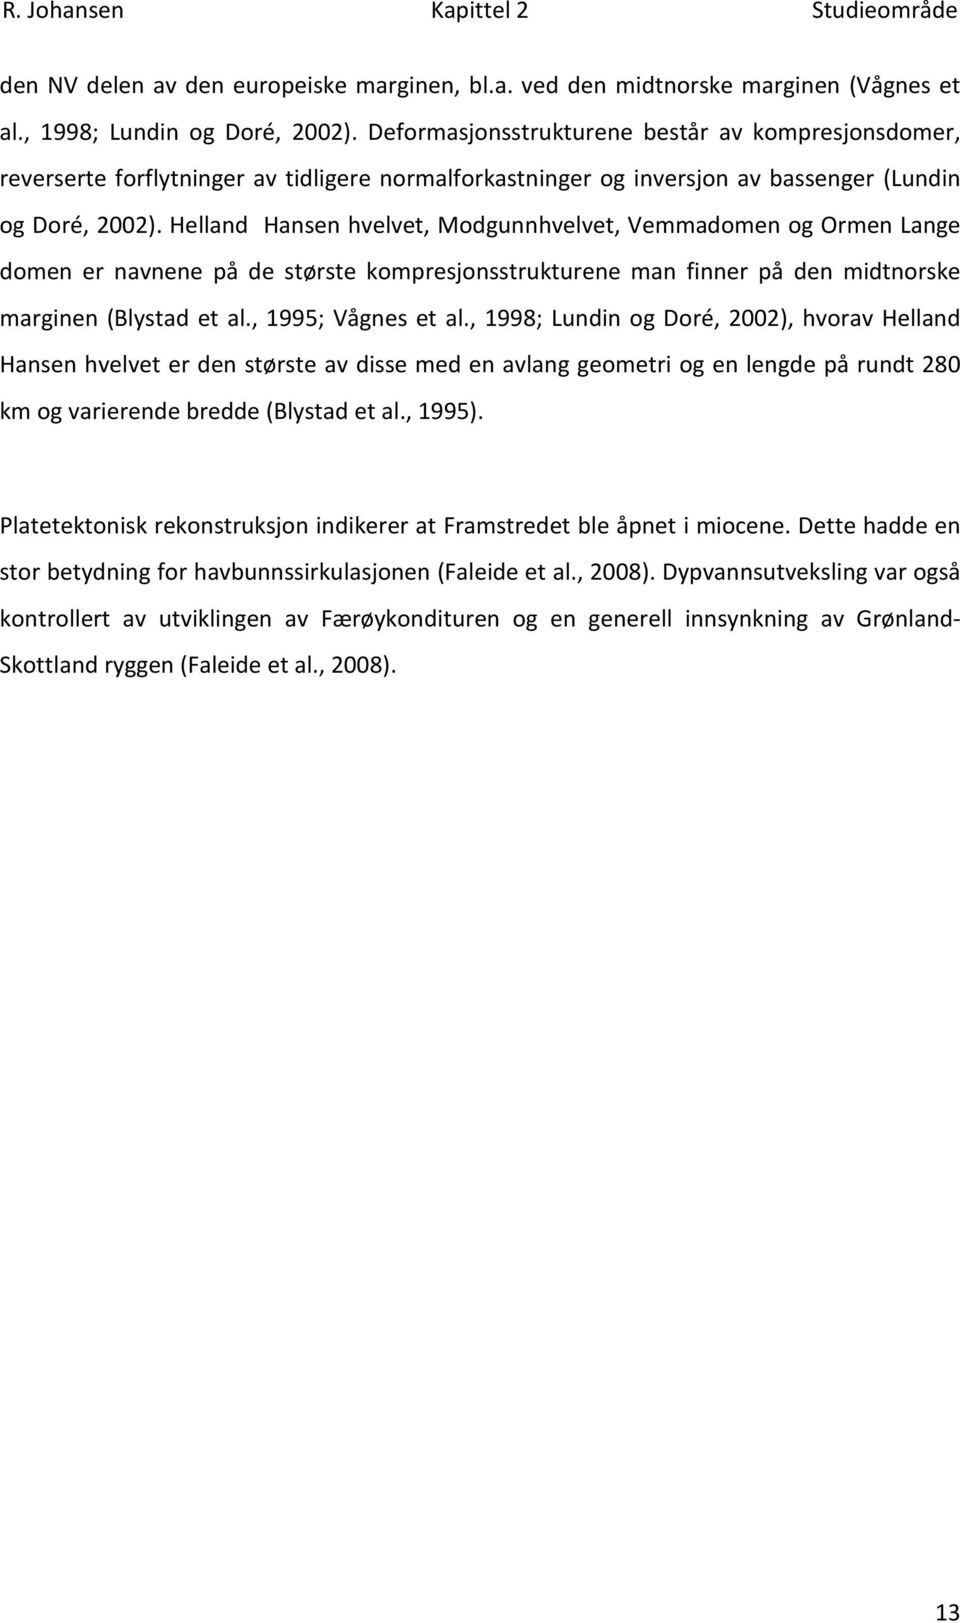 Helland Hansen hvelvet, Modgunnhvelvet, Vemmadomen og Ormen Lange domen er navnene på de største kompresjonsstrukturene man finner på den midtnorske marginen (Blystad et al., 1995; Vågnes et al.